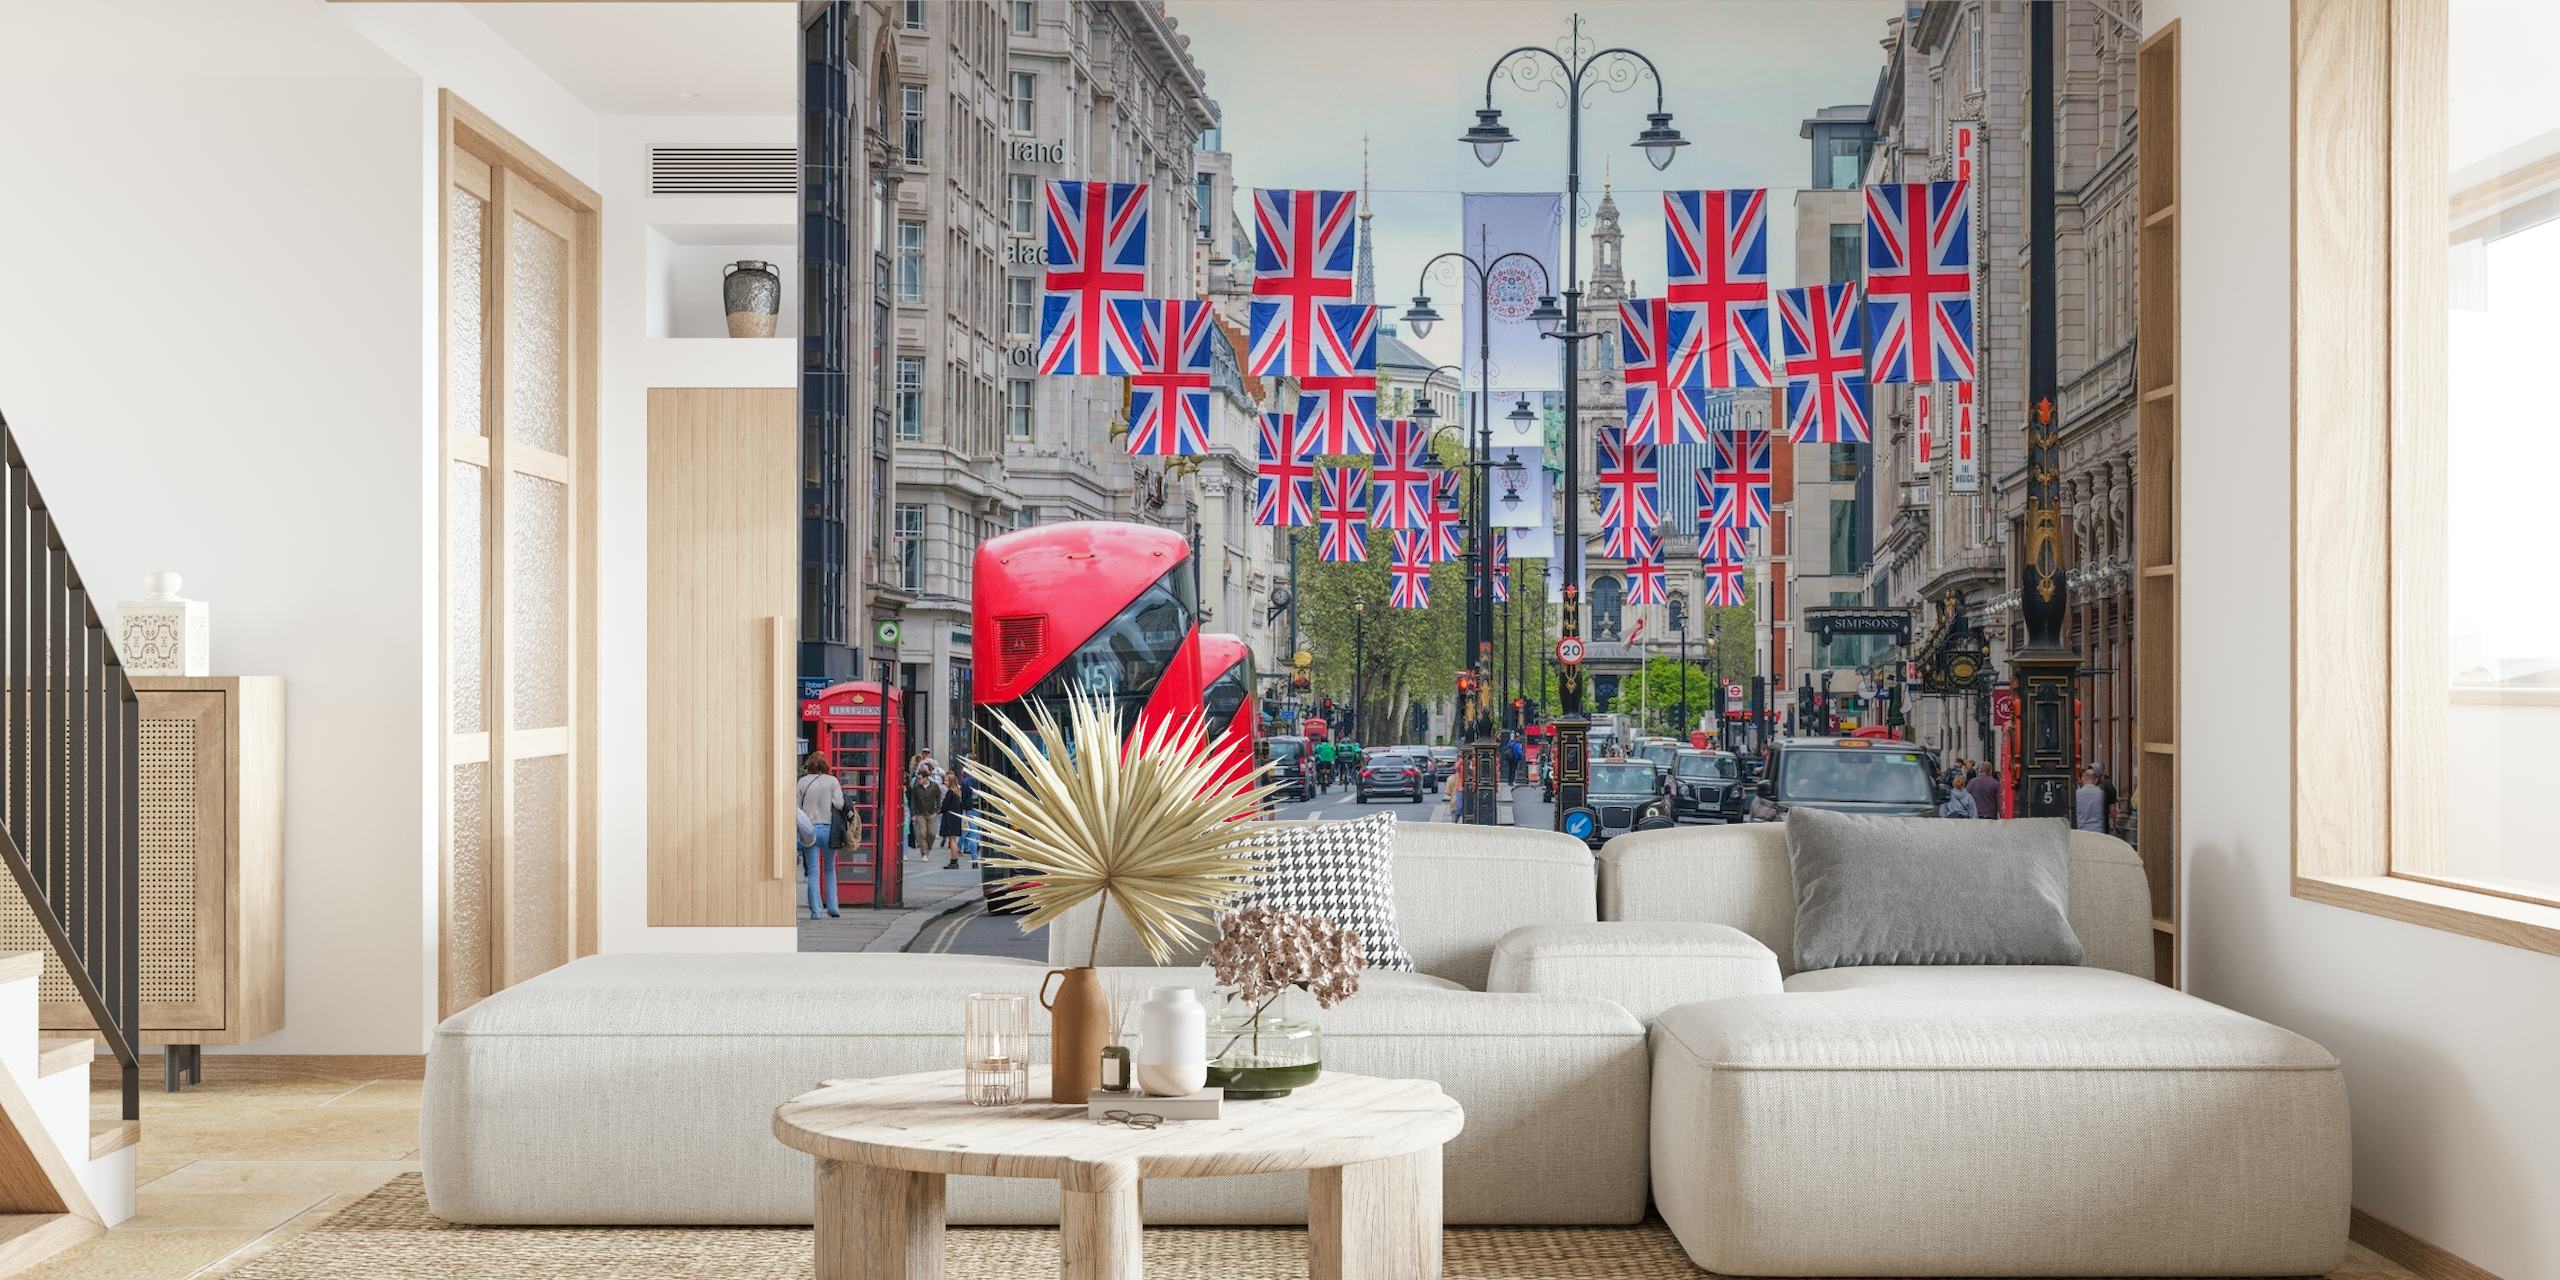 Londons gadebillede med Union Jack-flag og rødt dobbeltdækker-busvægmaleri